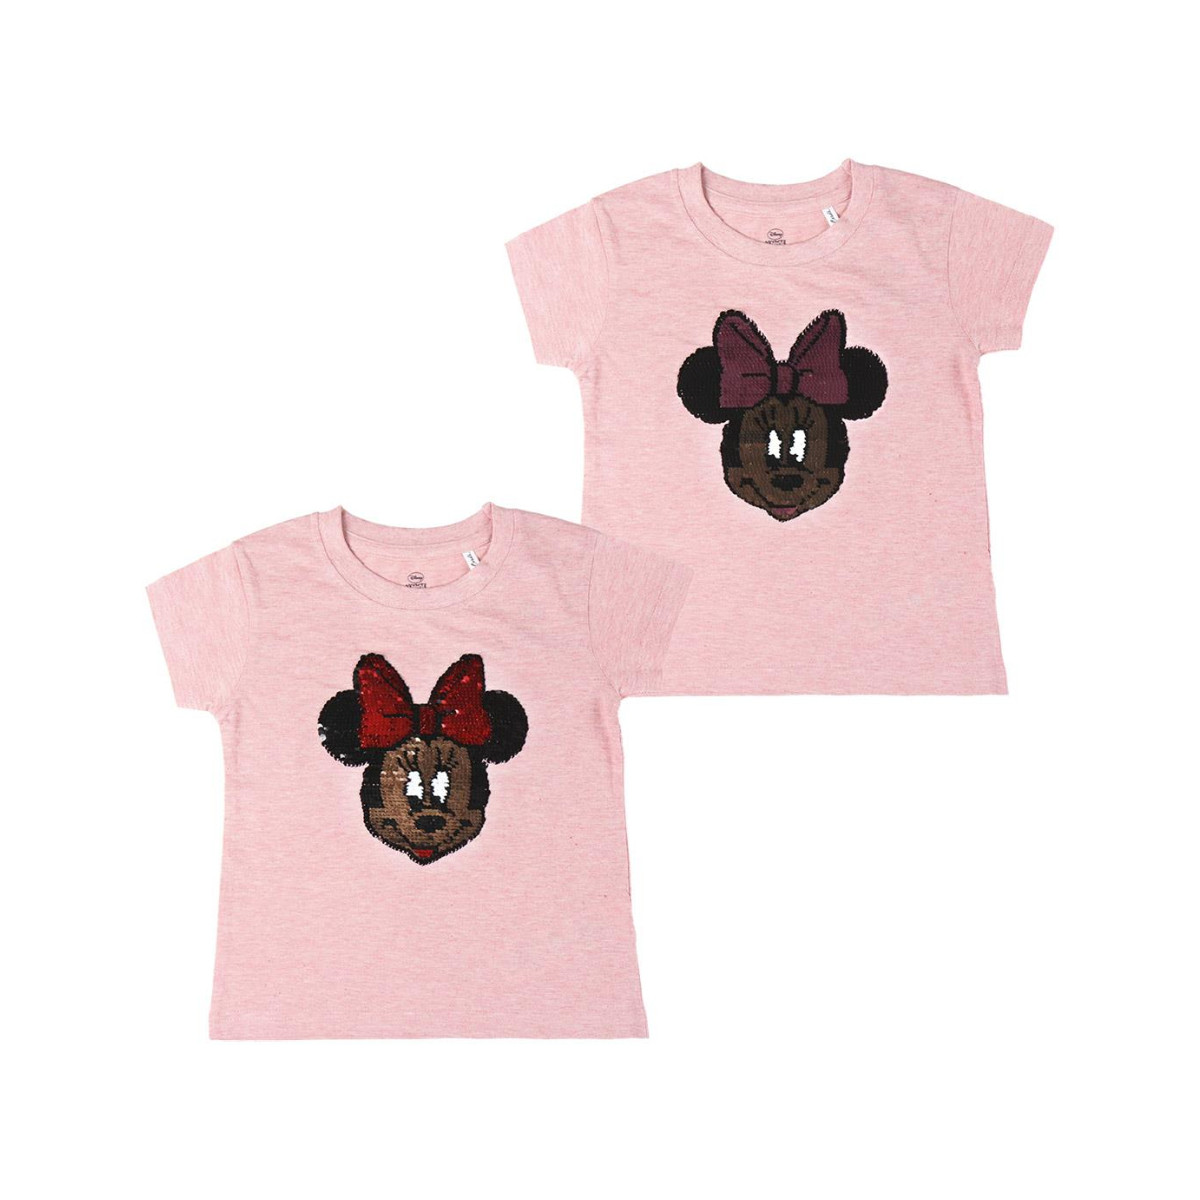 Textil Rapariga T-shirt mangas compridas Disney 2200004947 Rosa